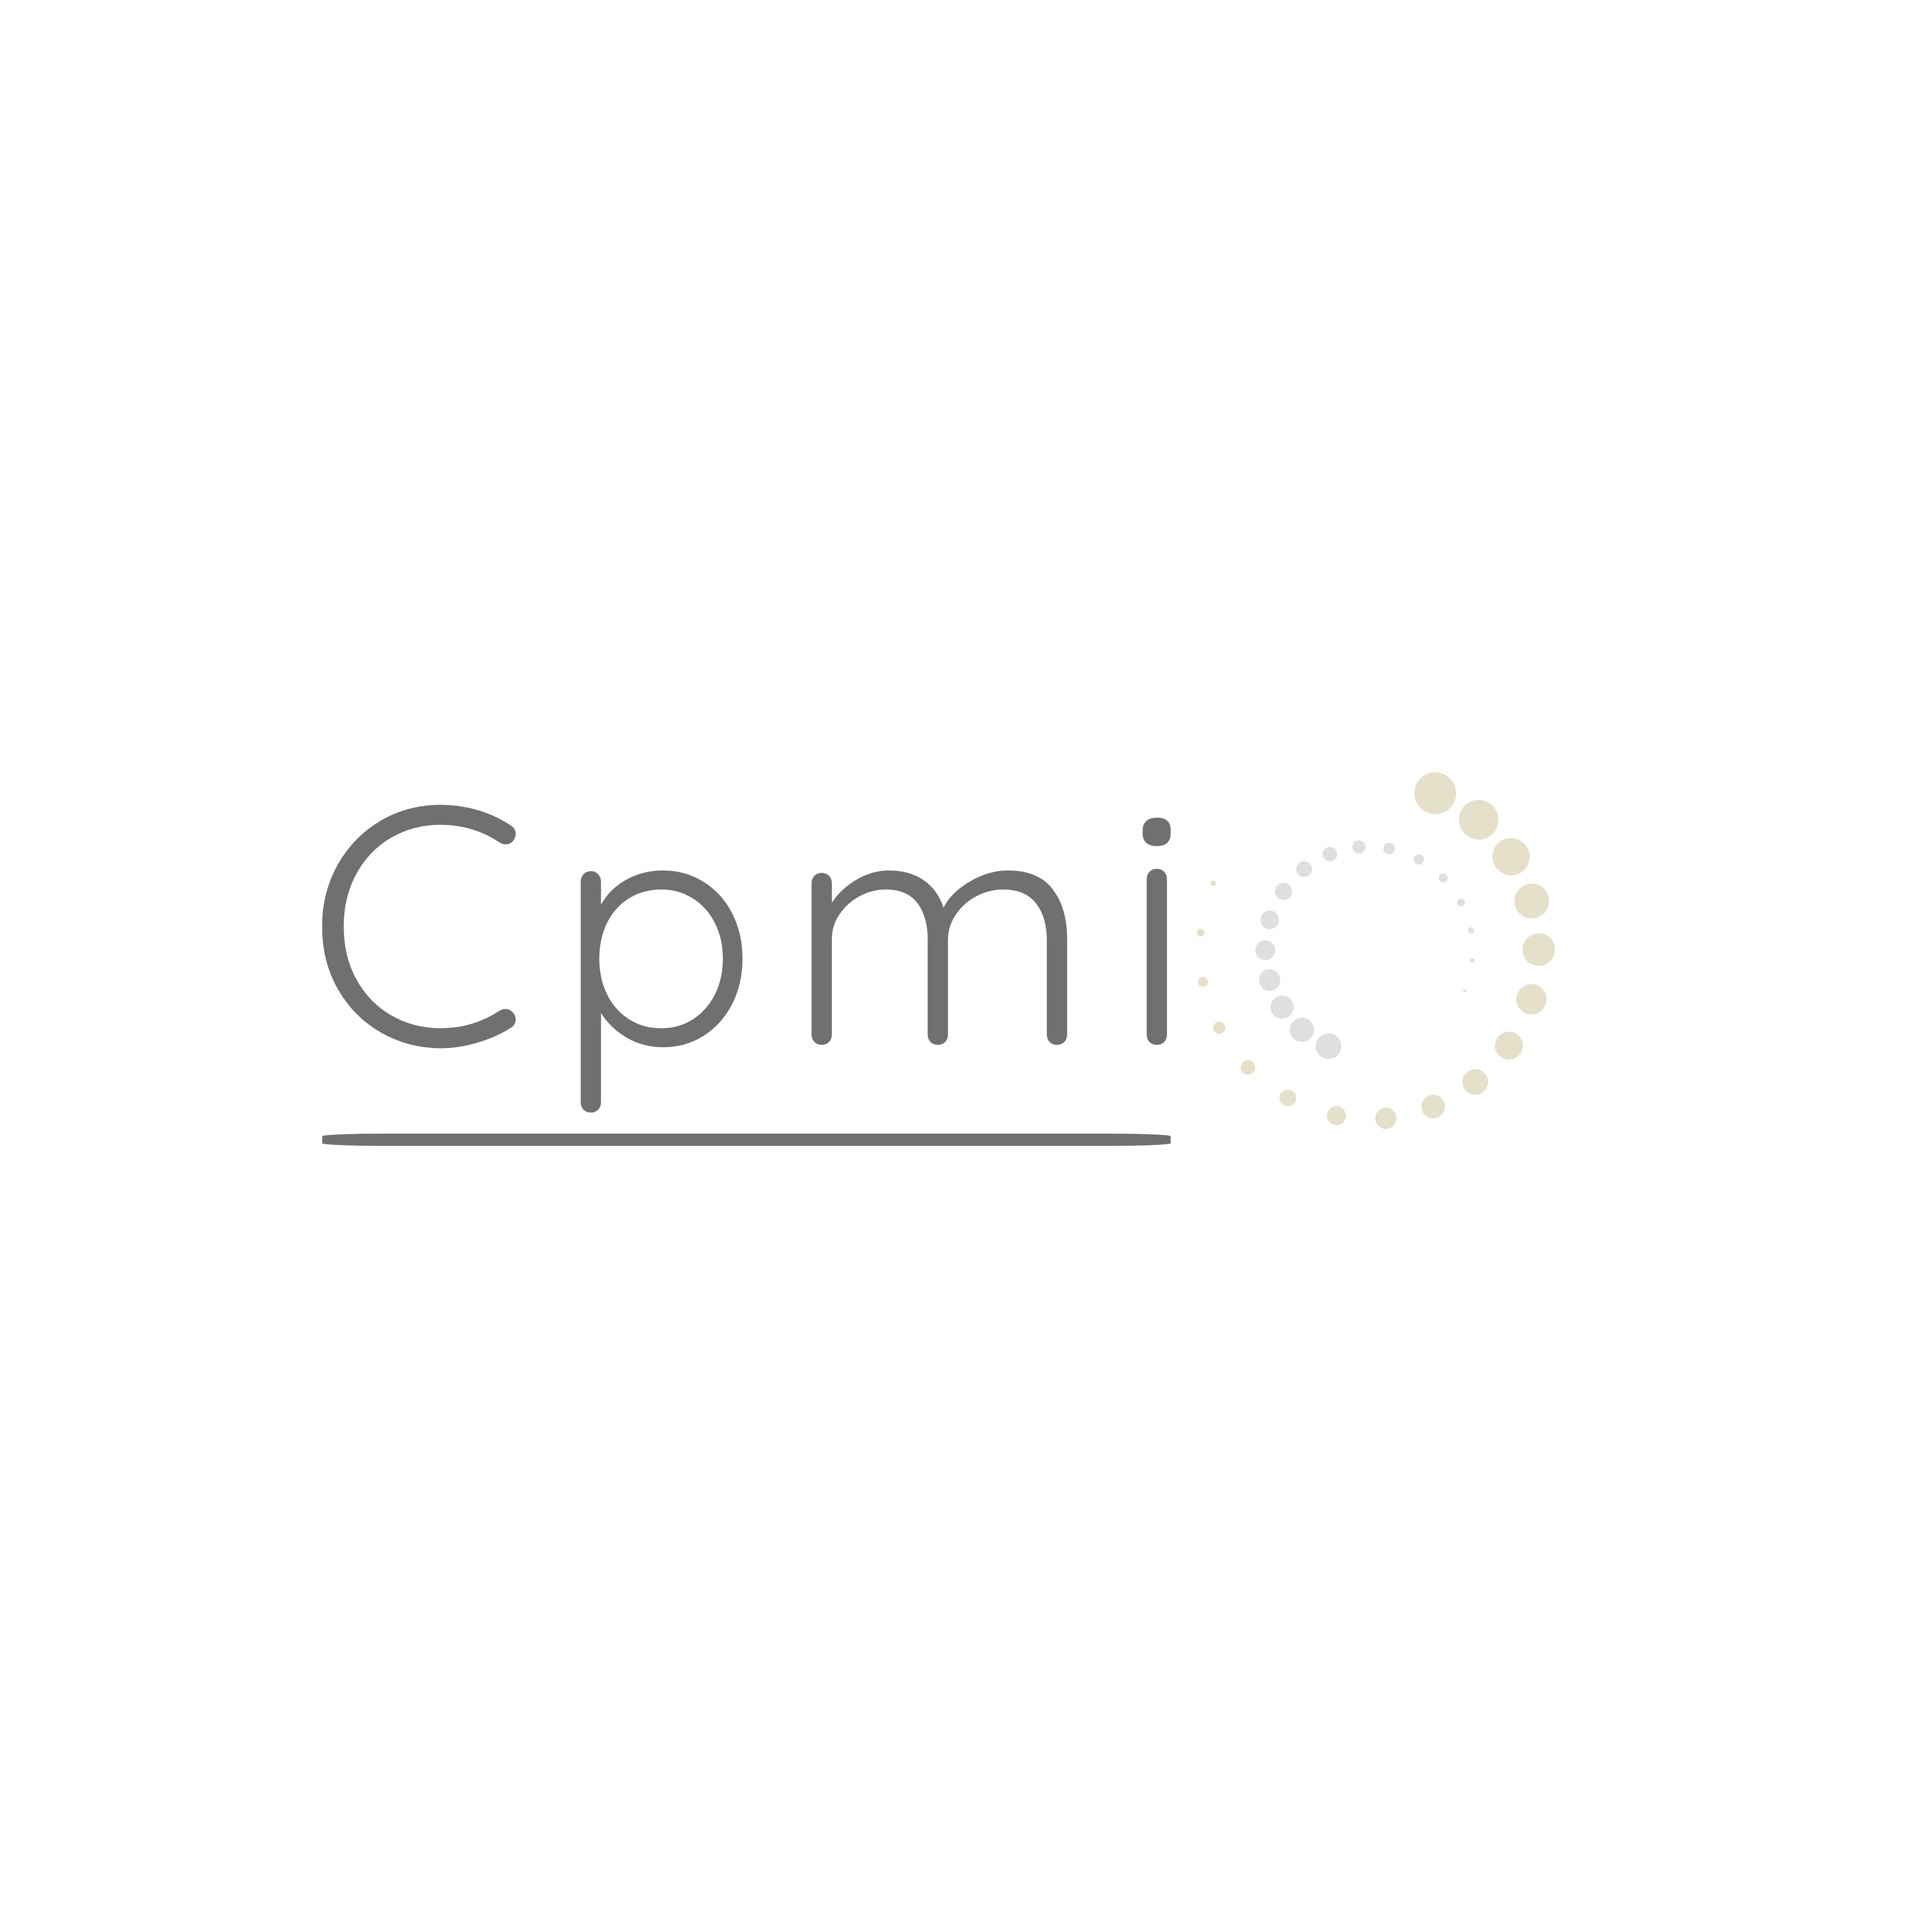 Cpmi - Centre de psychothérapie et médecine intégrative Logo